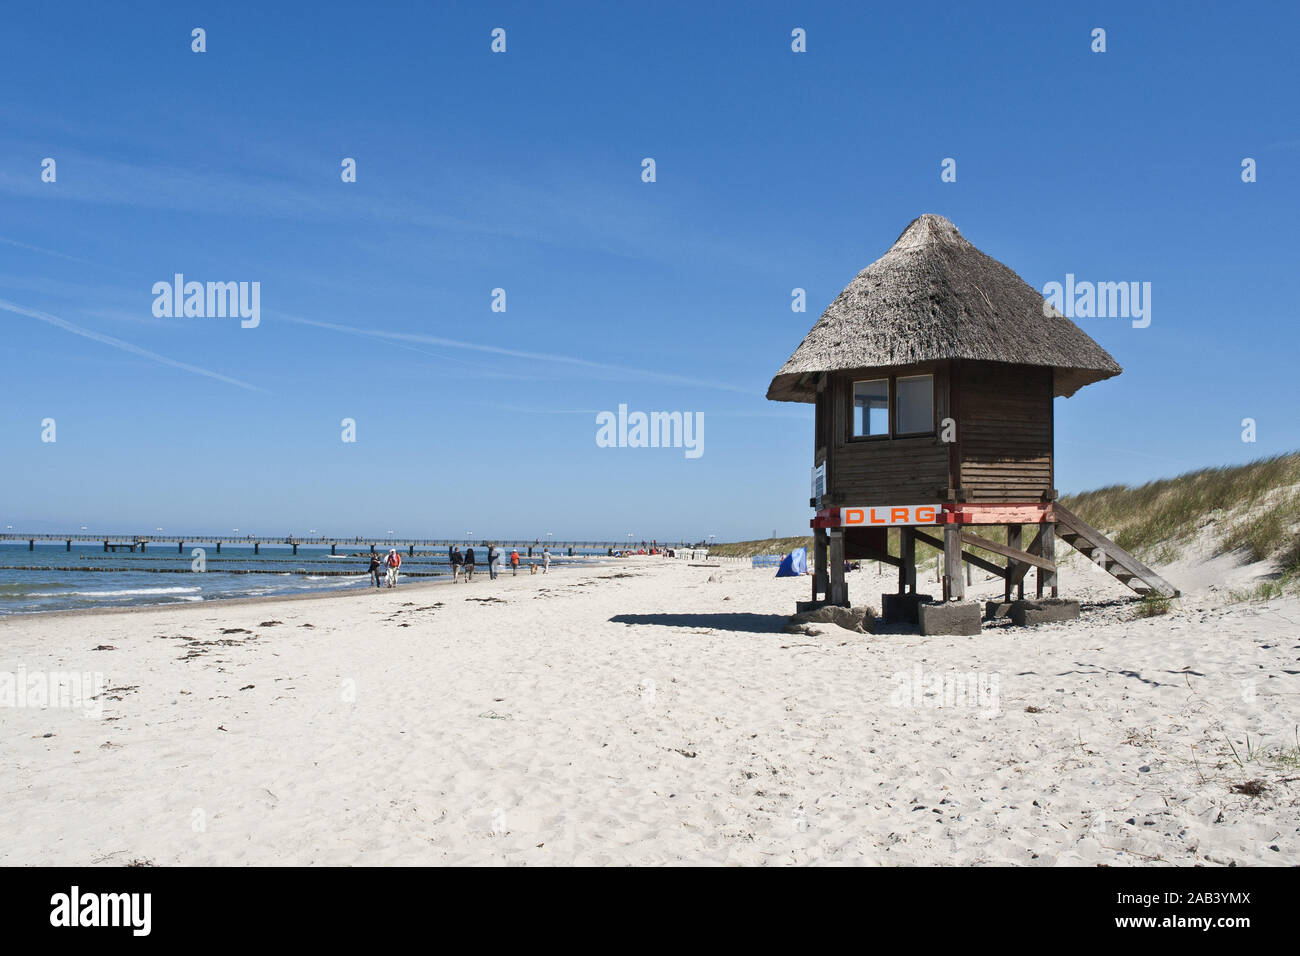 DLRG Haus an einem Strand an der Ostsee |DLRG maison sur une plage de la mer Baltique| Banque D'Images